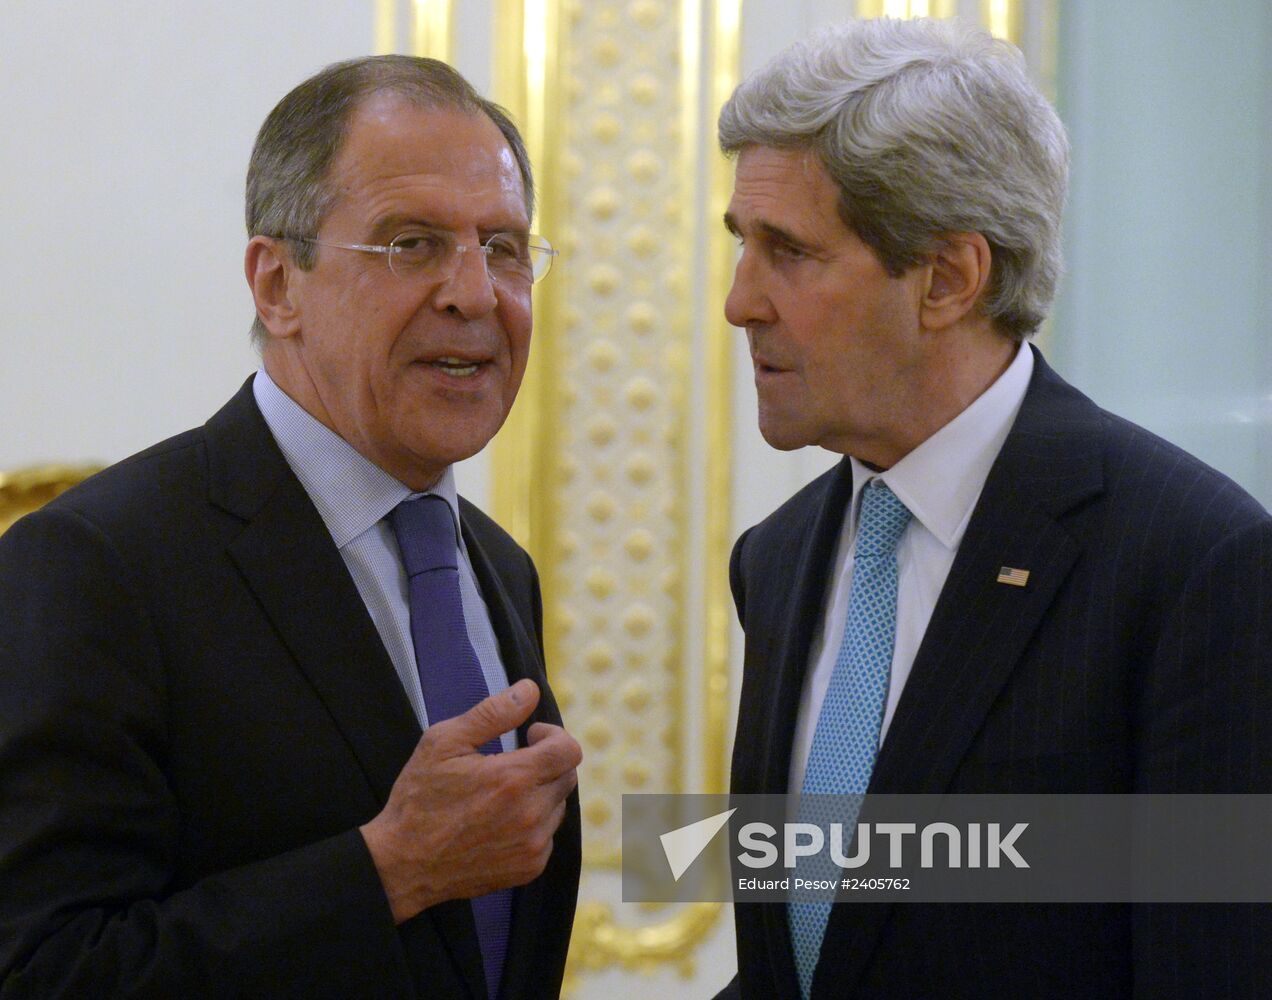 Sergei Lavrov and John Kerry meet in Paris